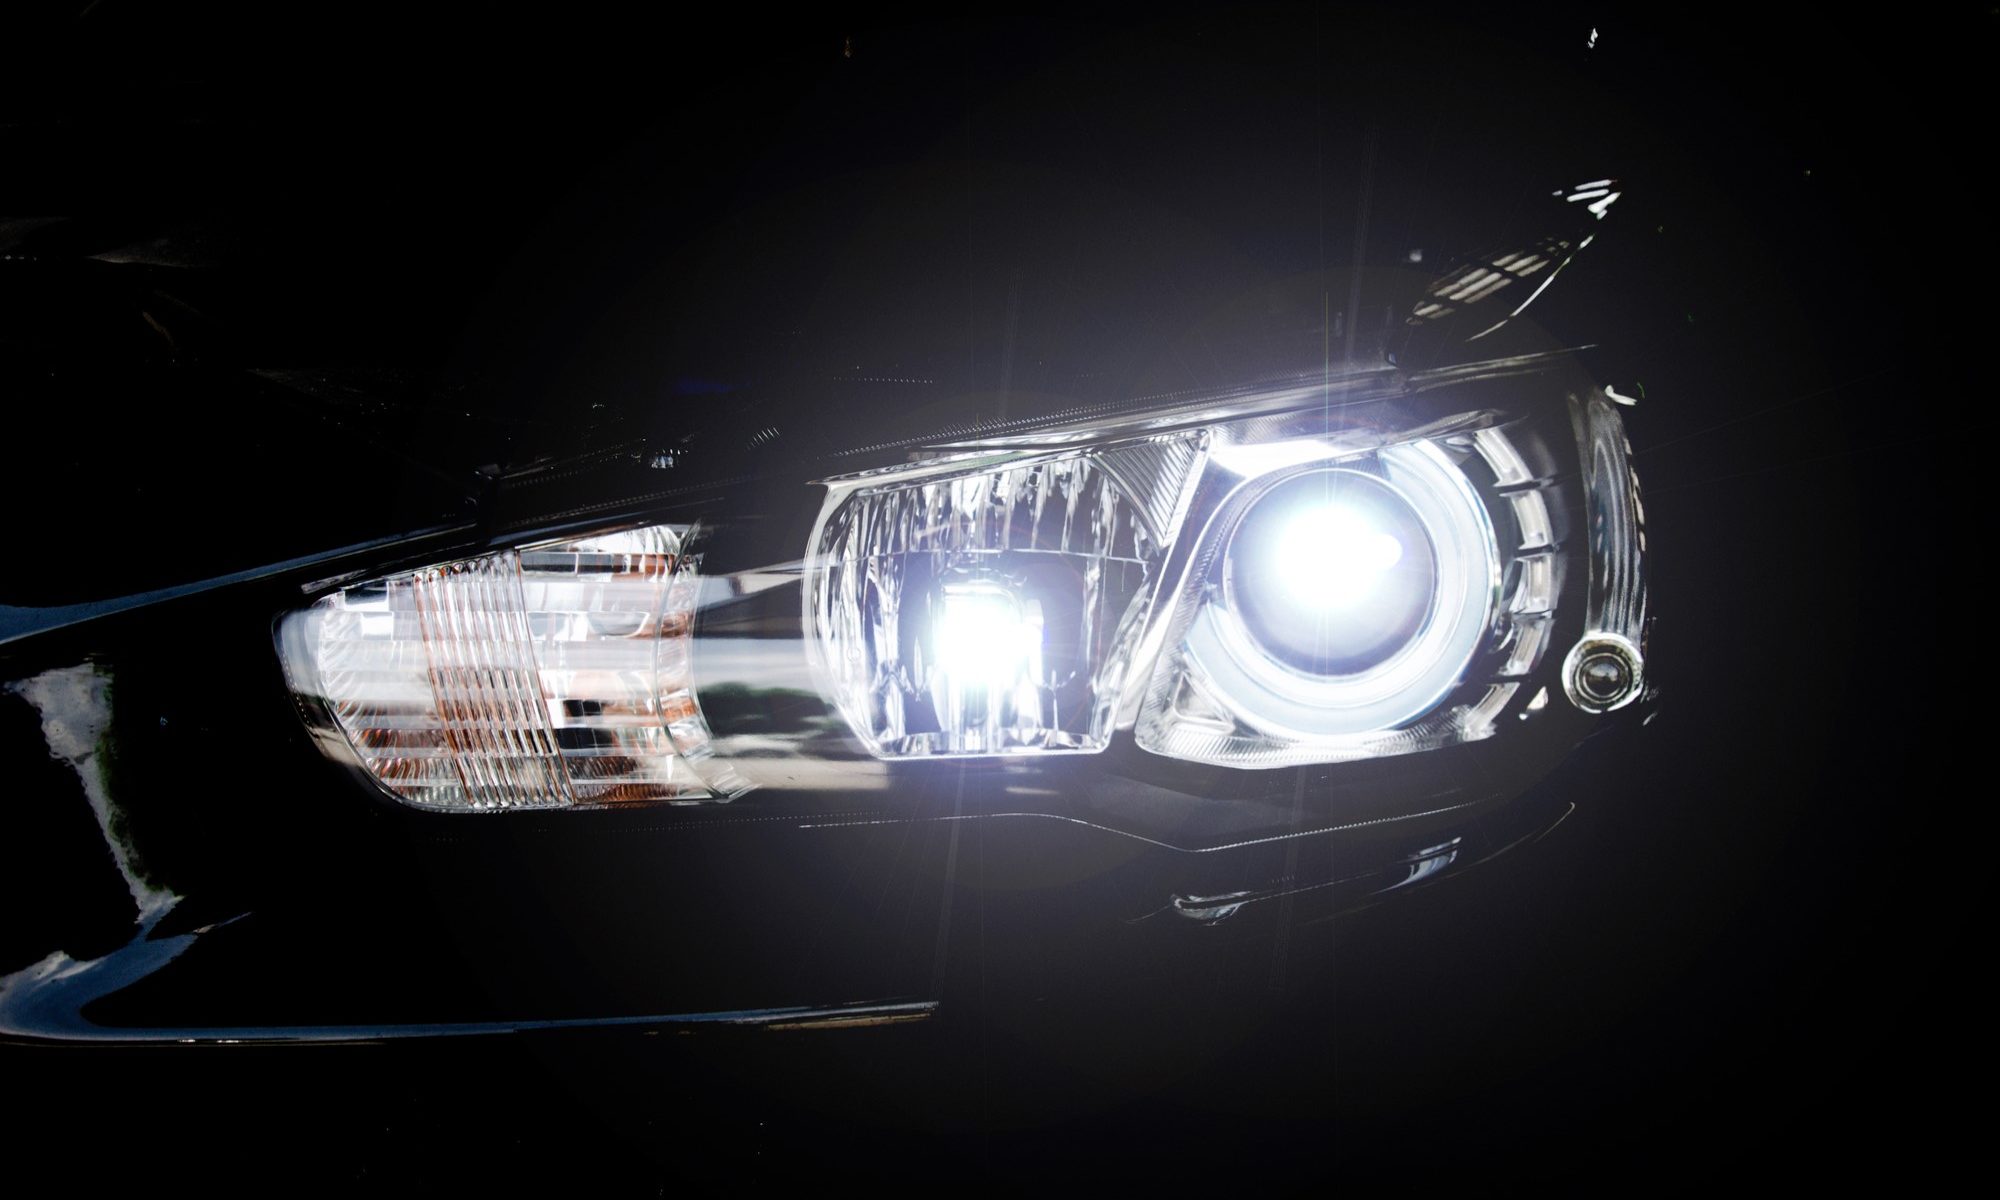 close-up photograph of car headlight